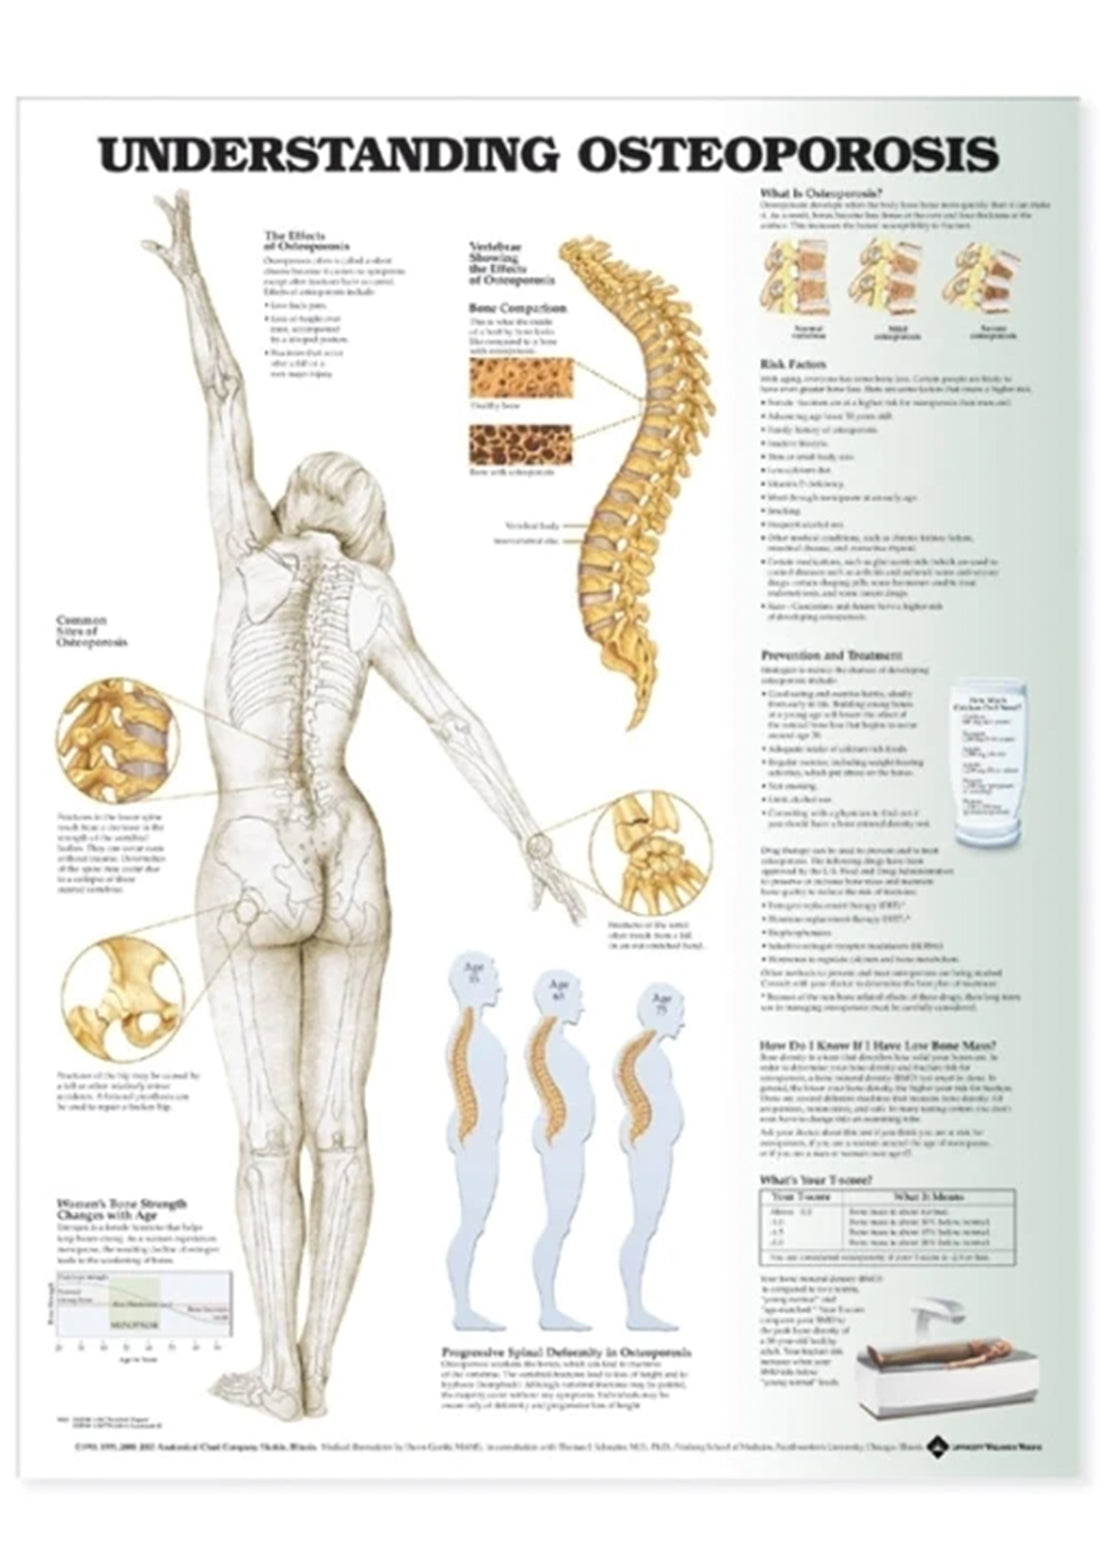 Lamineret plakat om osteoporose (knogleskørhed) på engelsk